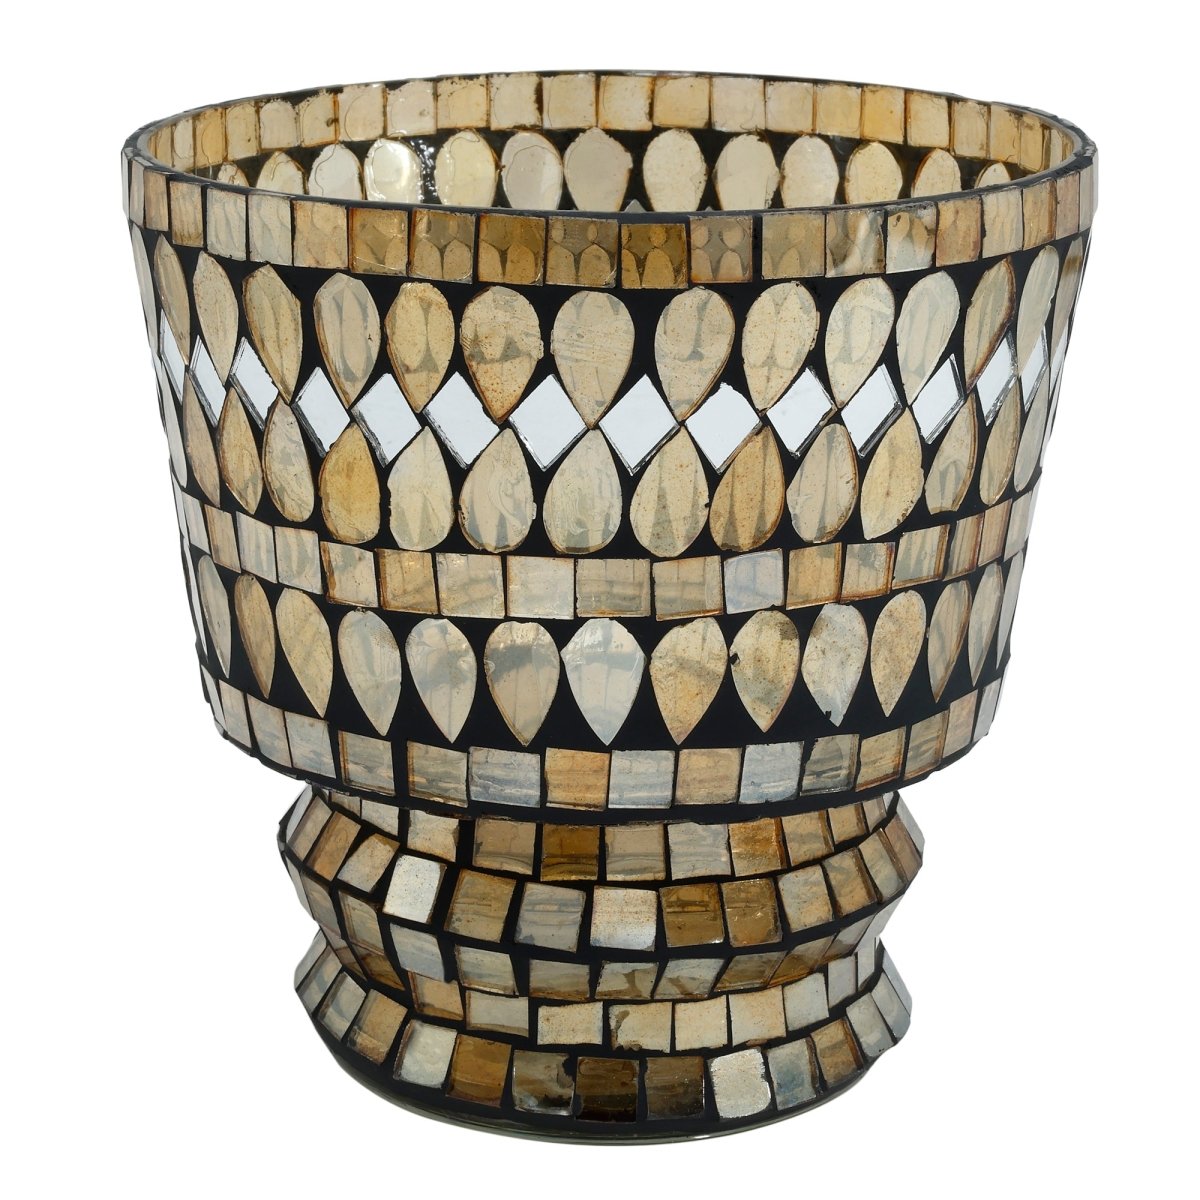 Teelichthalter - Riv Gold glass mosaic - Esszett Luxury